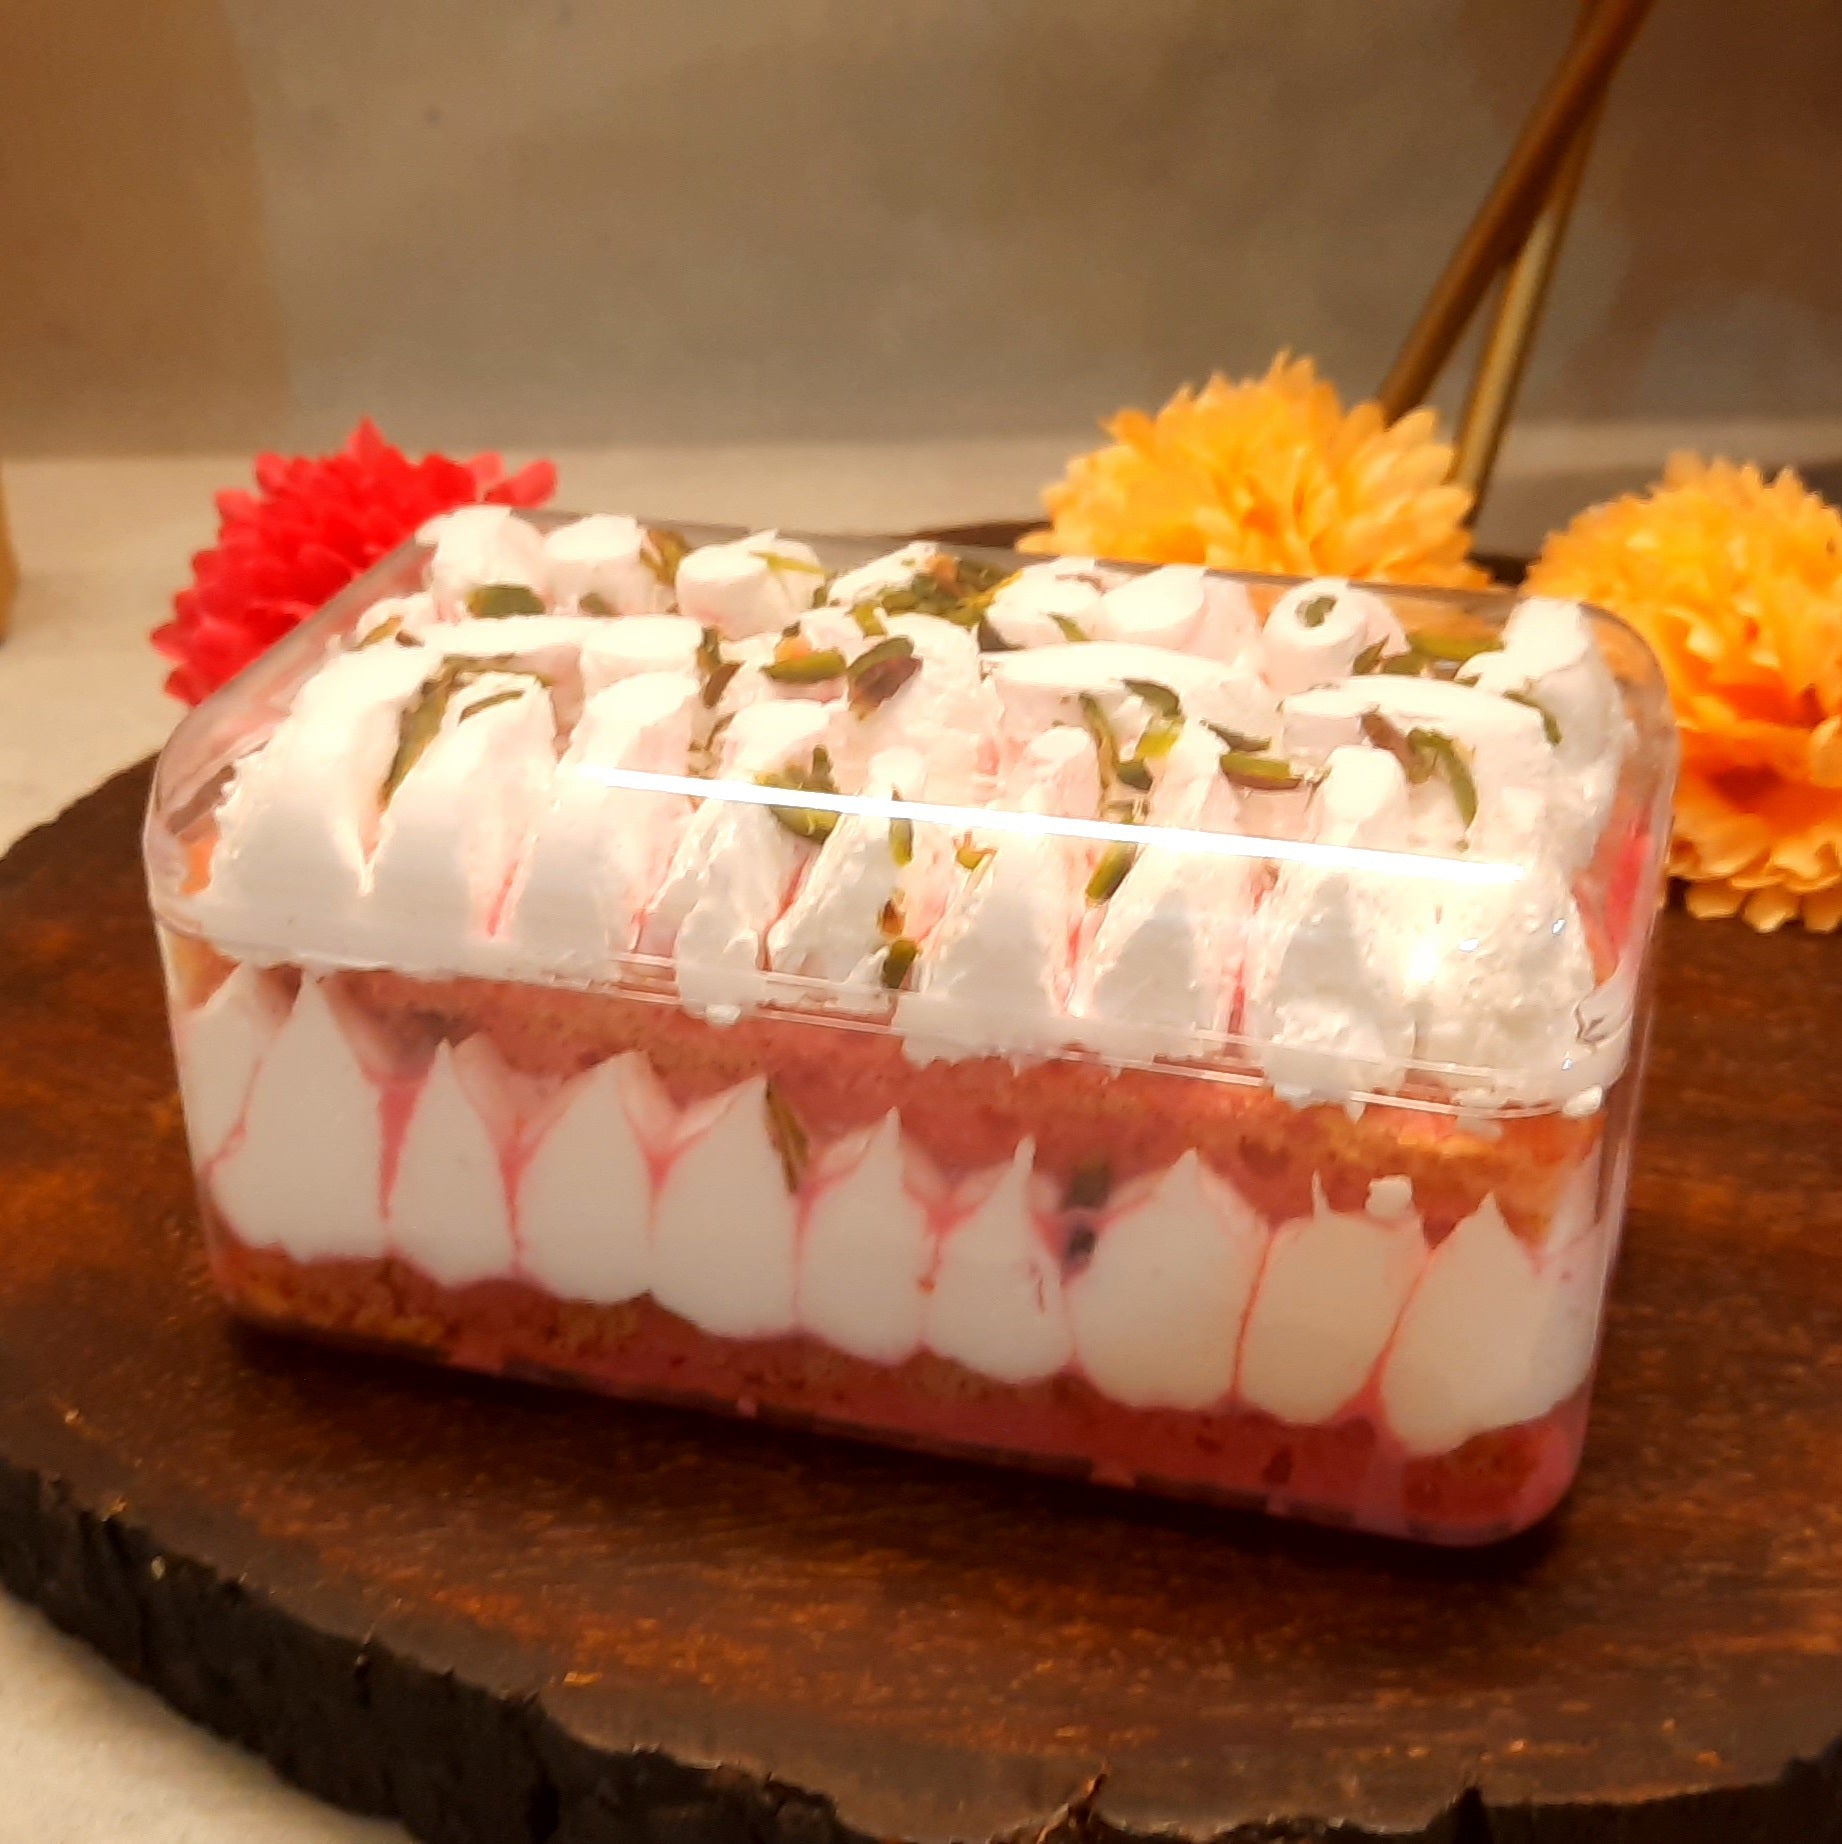 Rose & Pistachio Dessert Tub